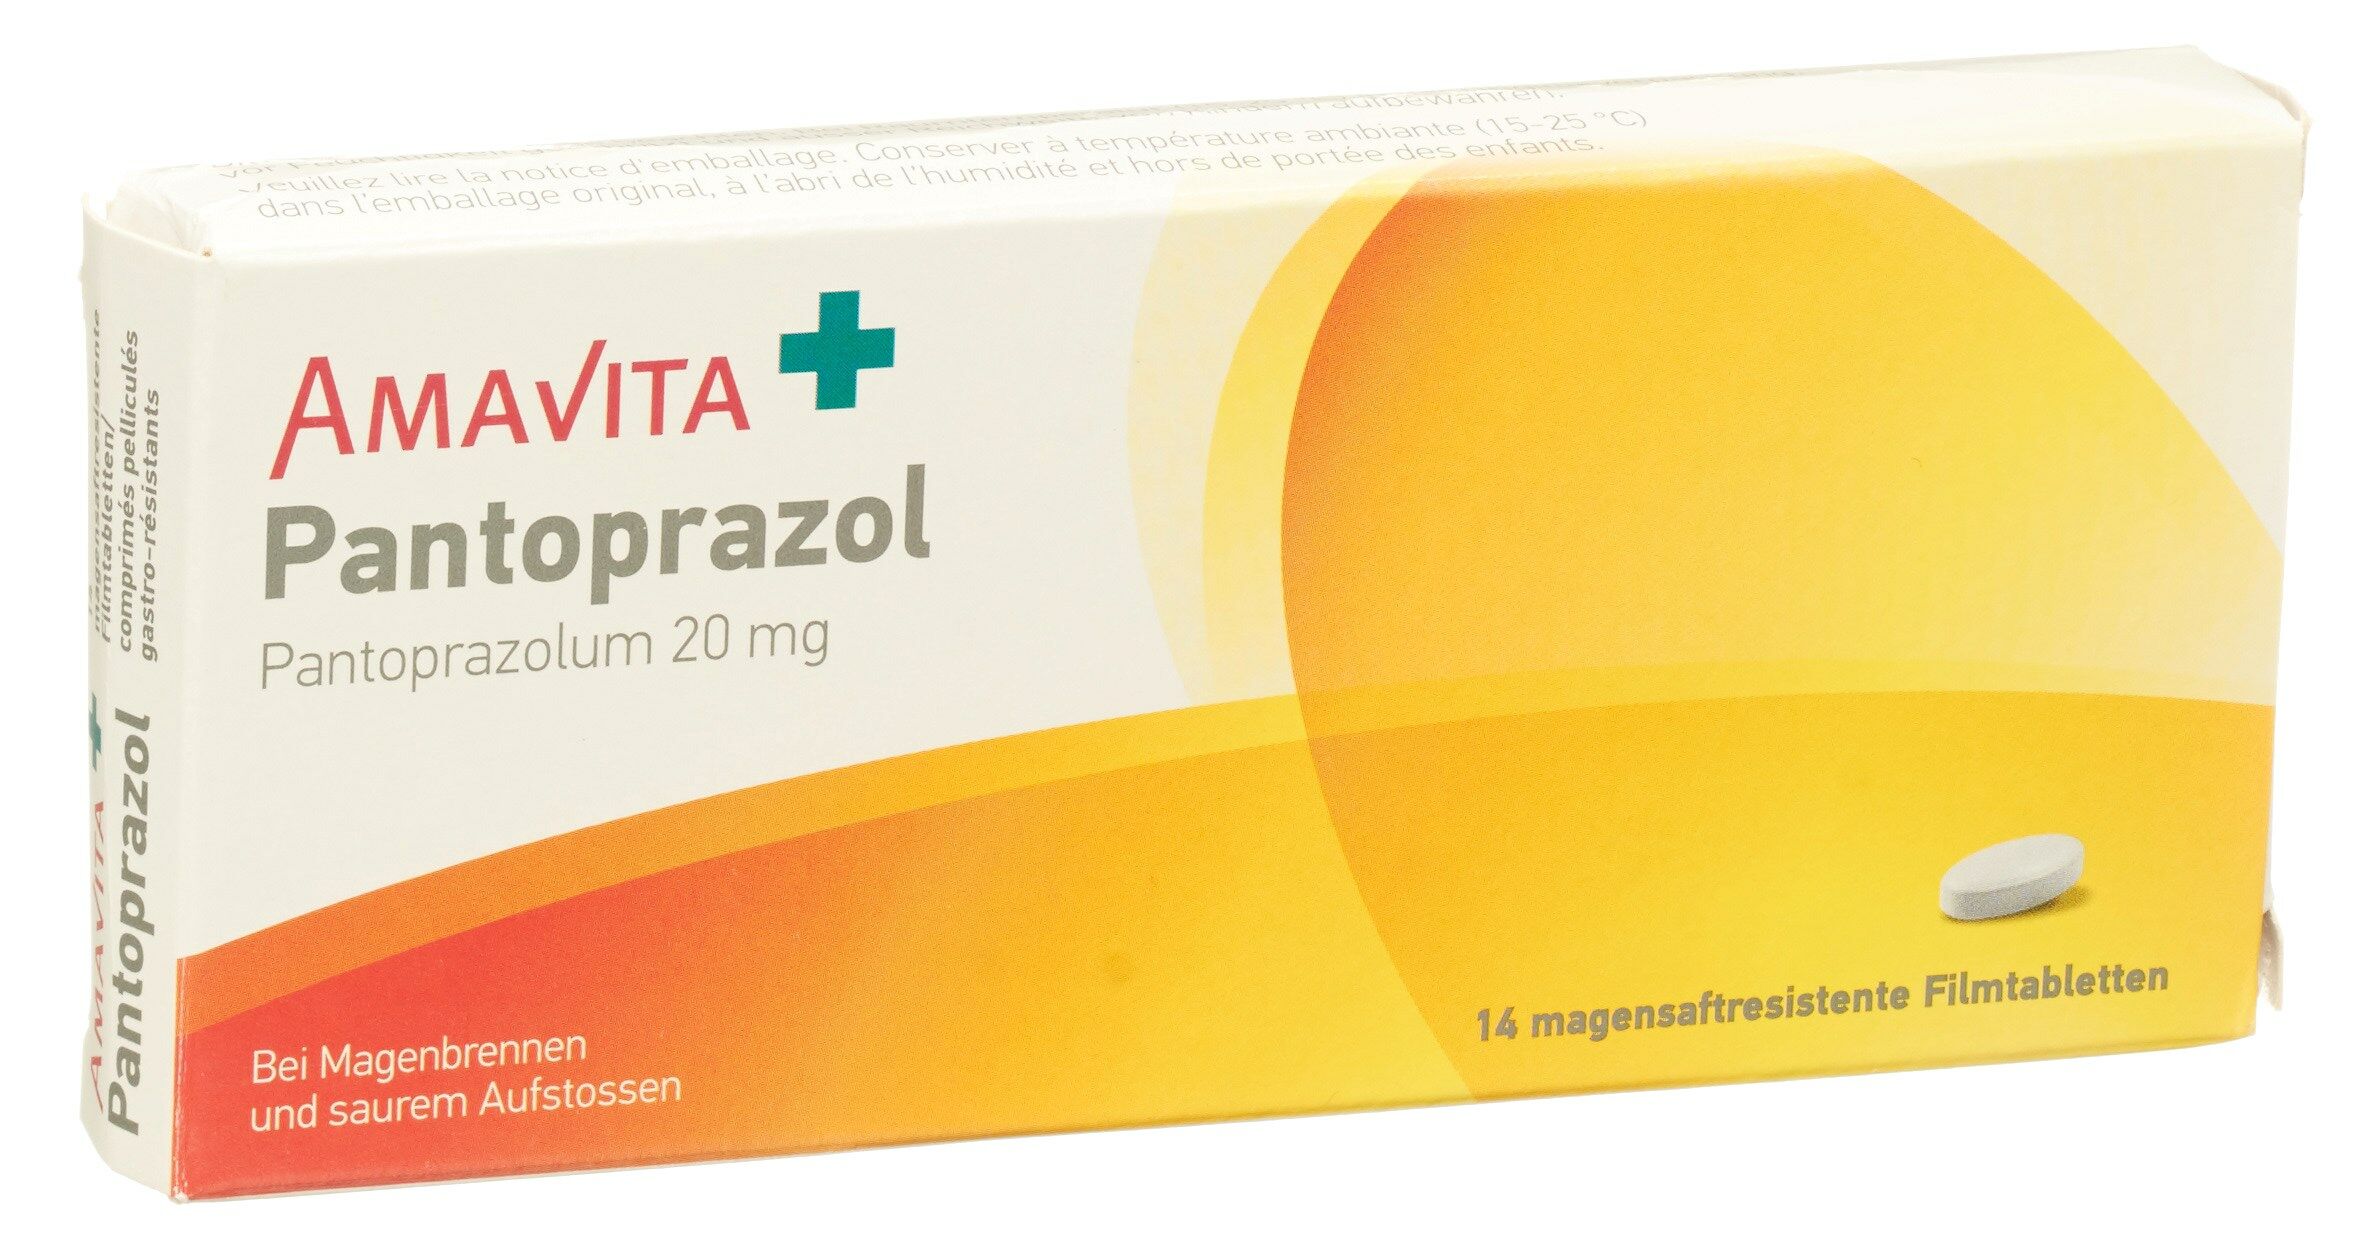 Zusammen pantoprazol und ibuprofen Magenschutzmittel